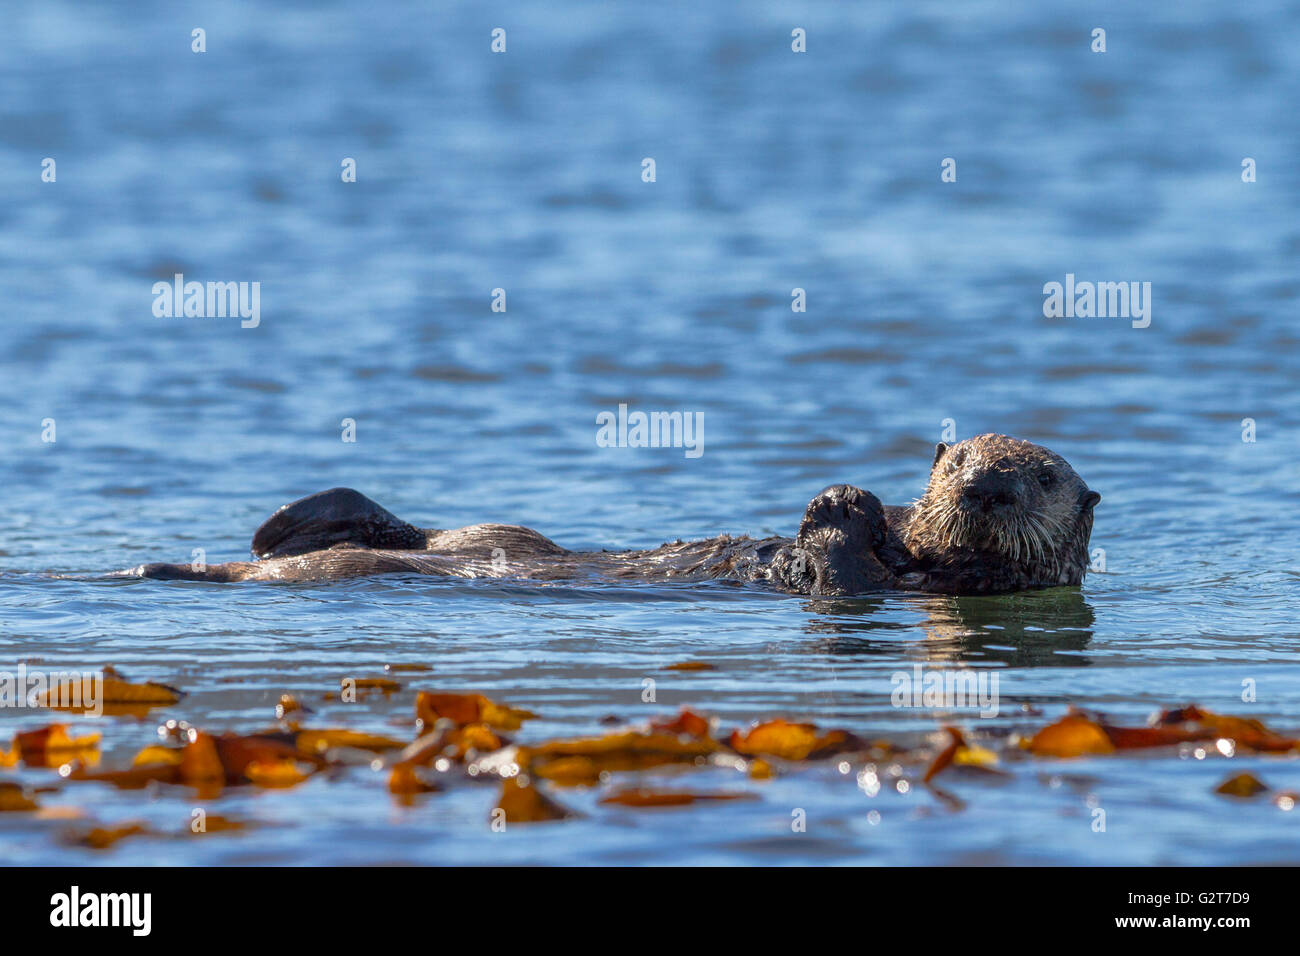 Sea Otter sulla sua schiena godendo il sole, British Columbia, Canada Foto Stock